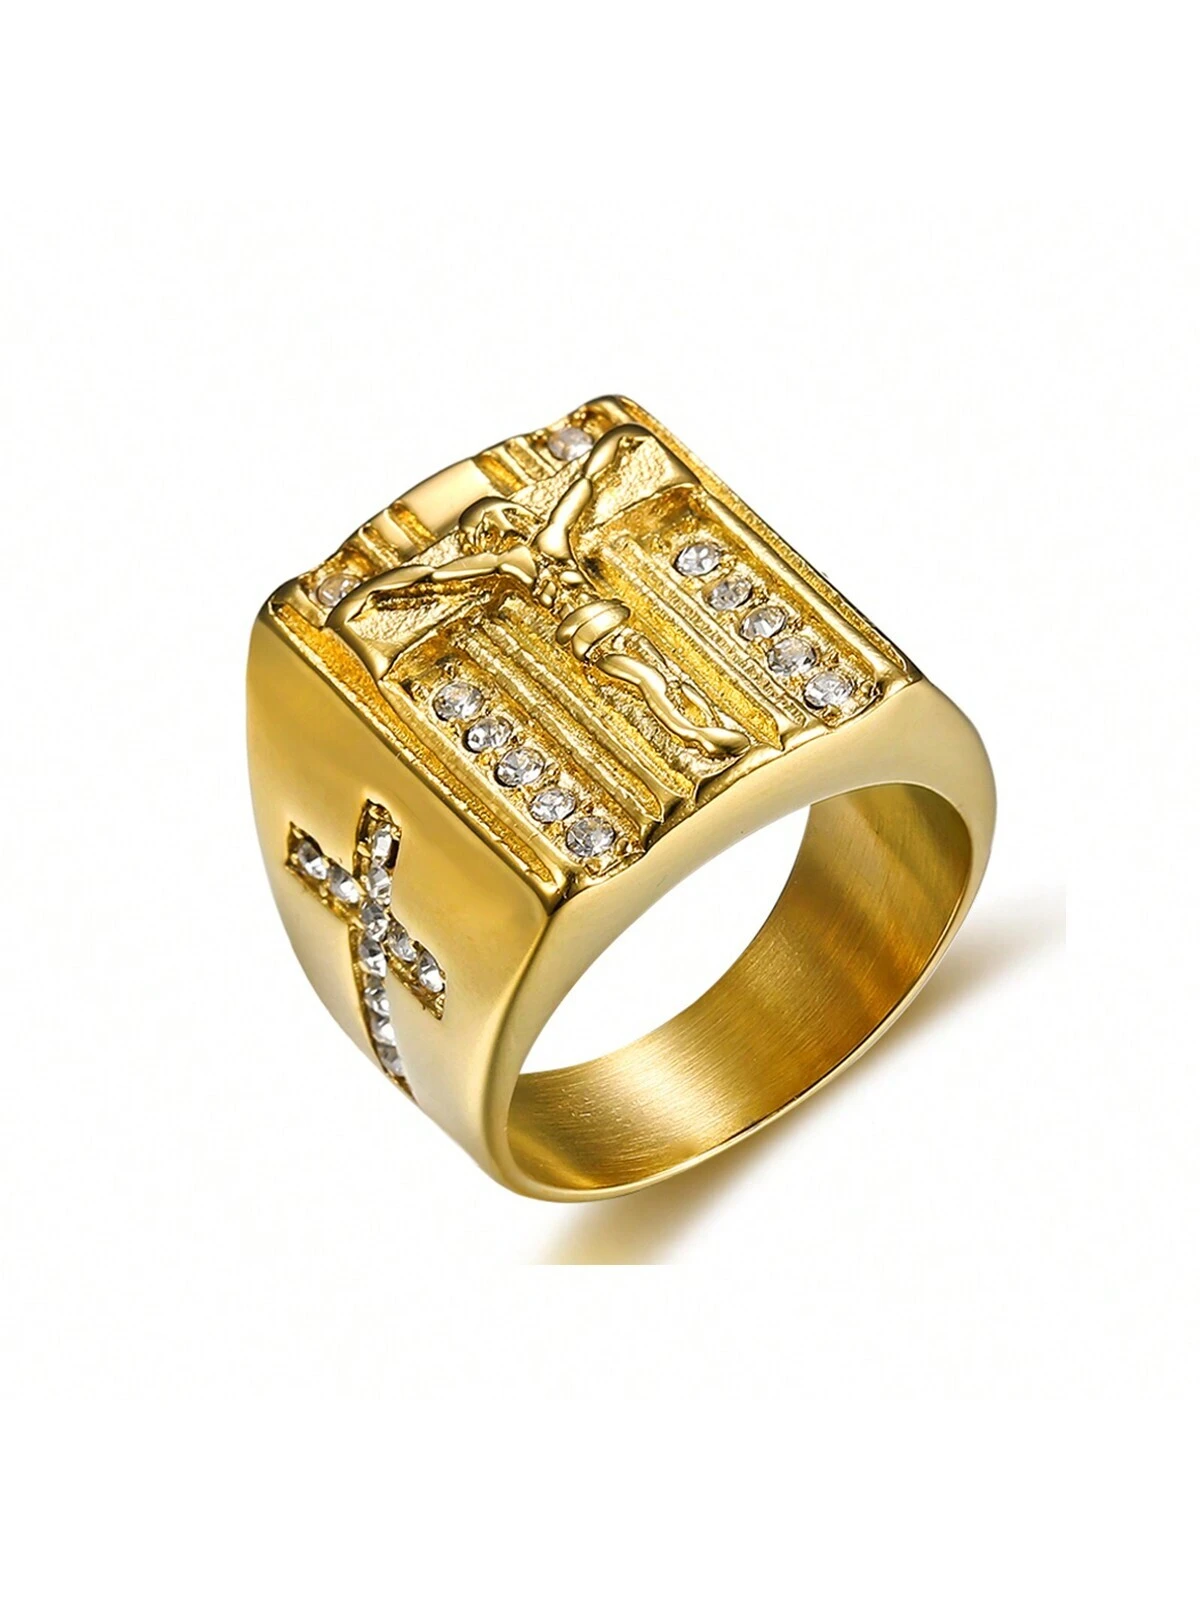 Ανδρικό δαχτυλίδι χρυσό εσταυρωμένος